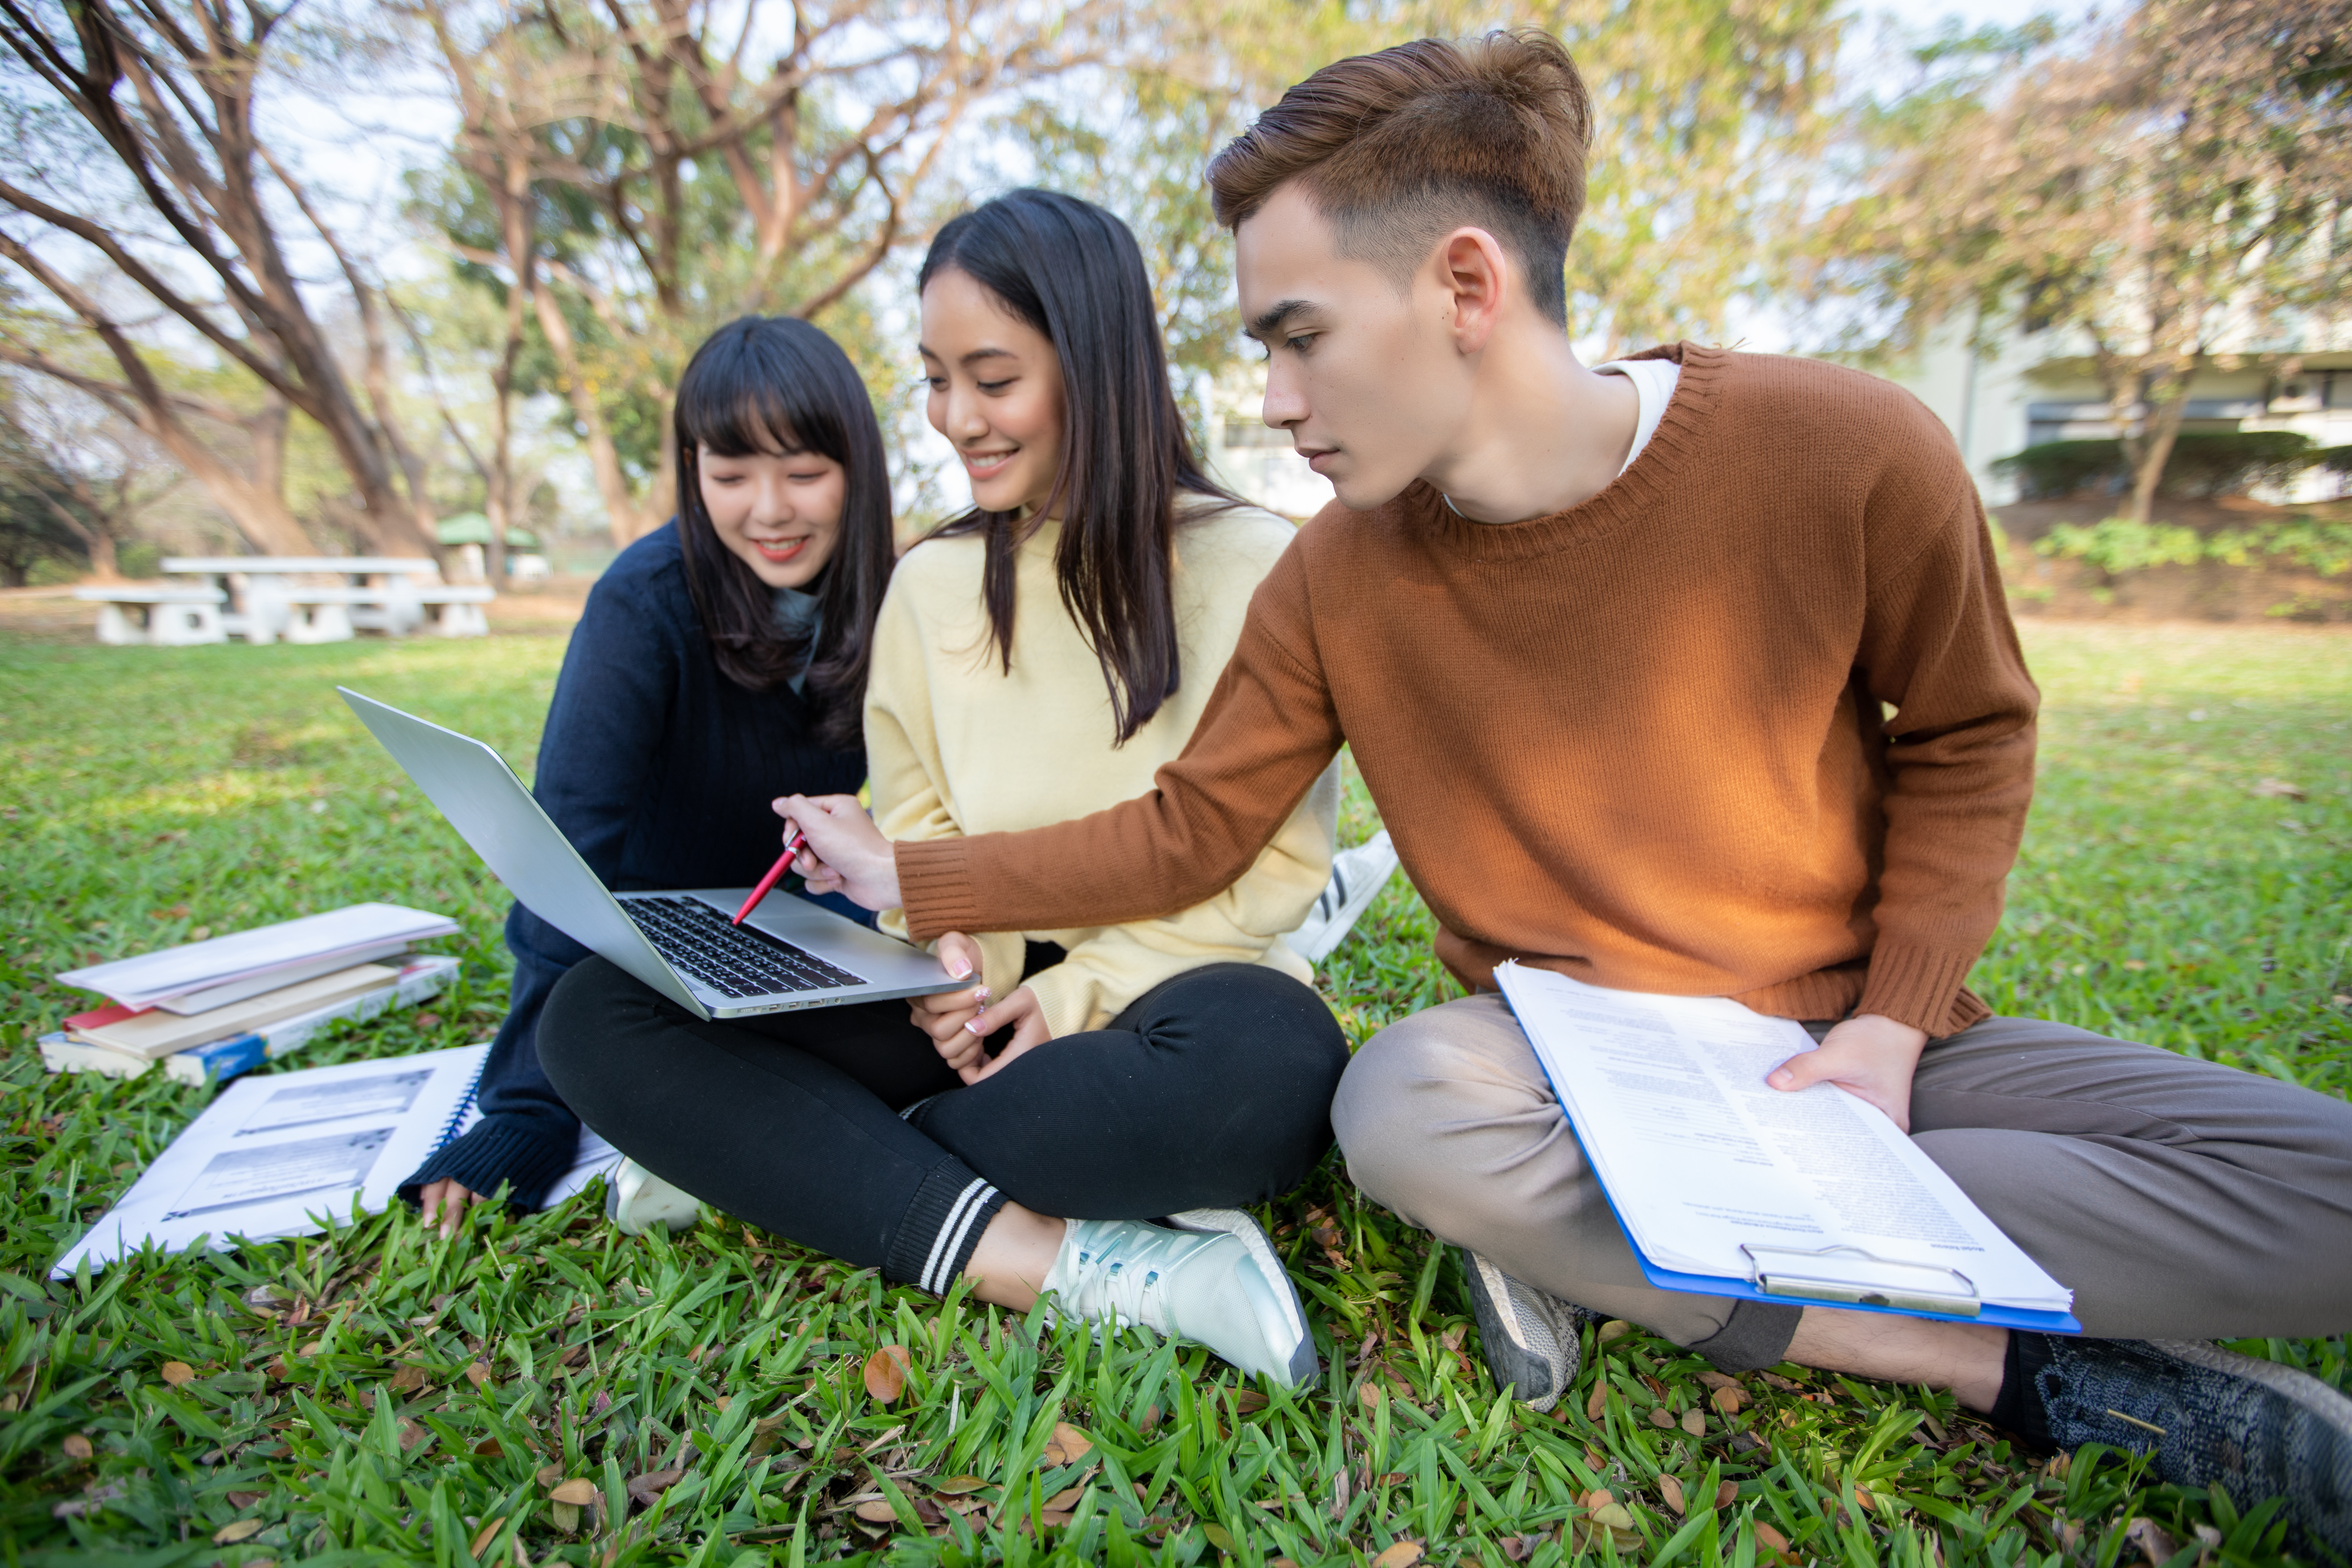 Studenci UJ uczący się wspólnie na trawie w parku